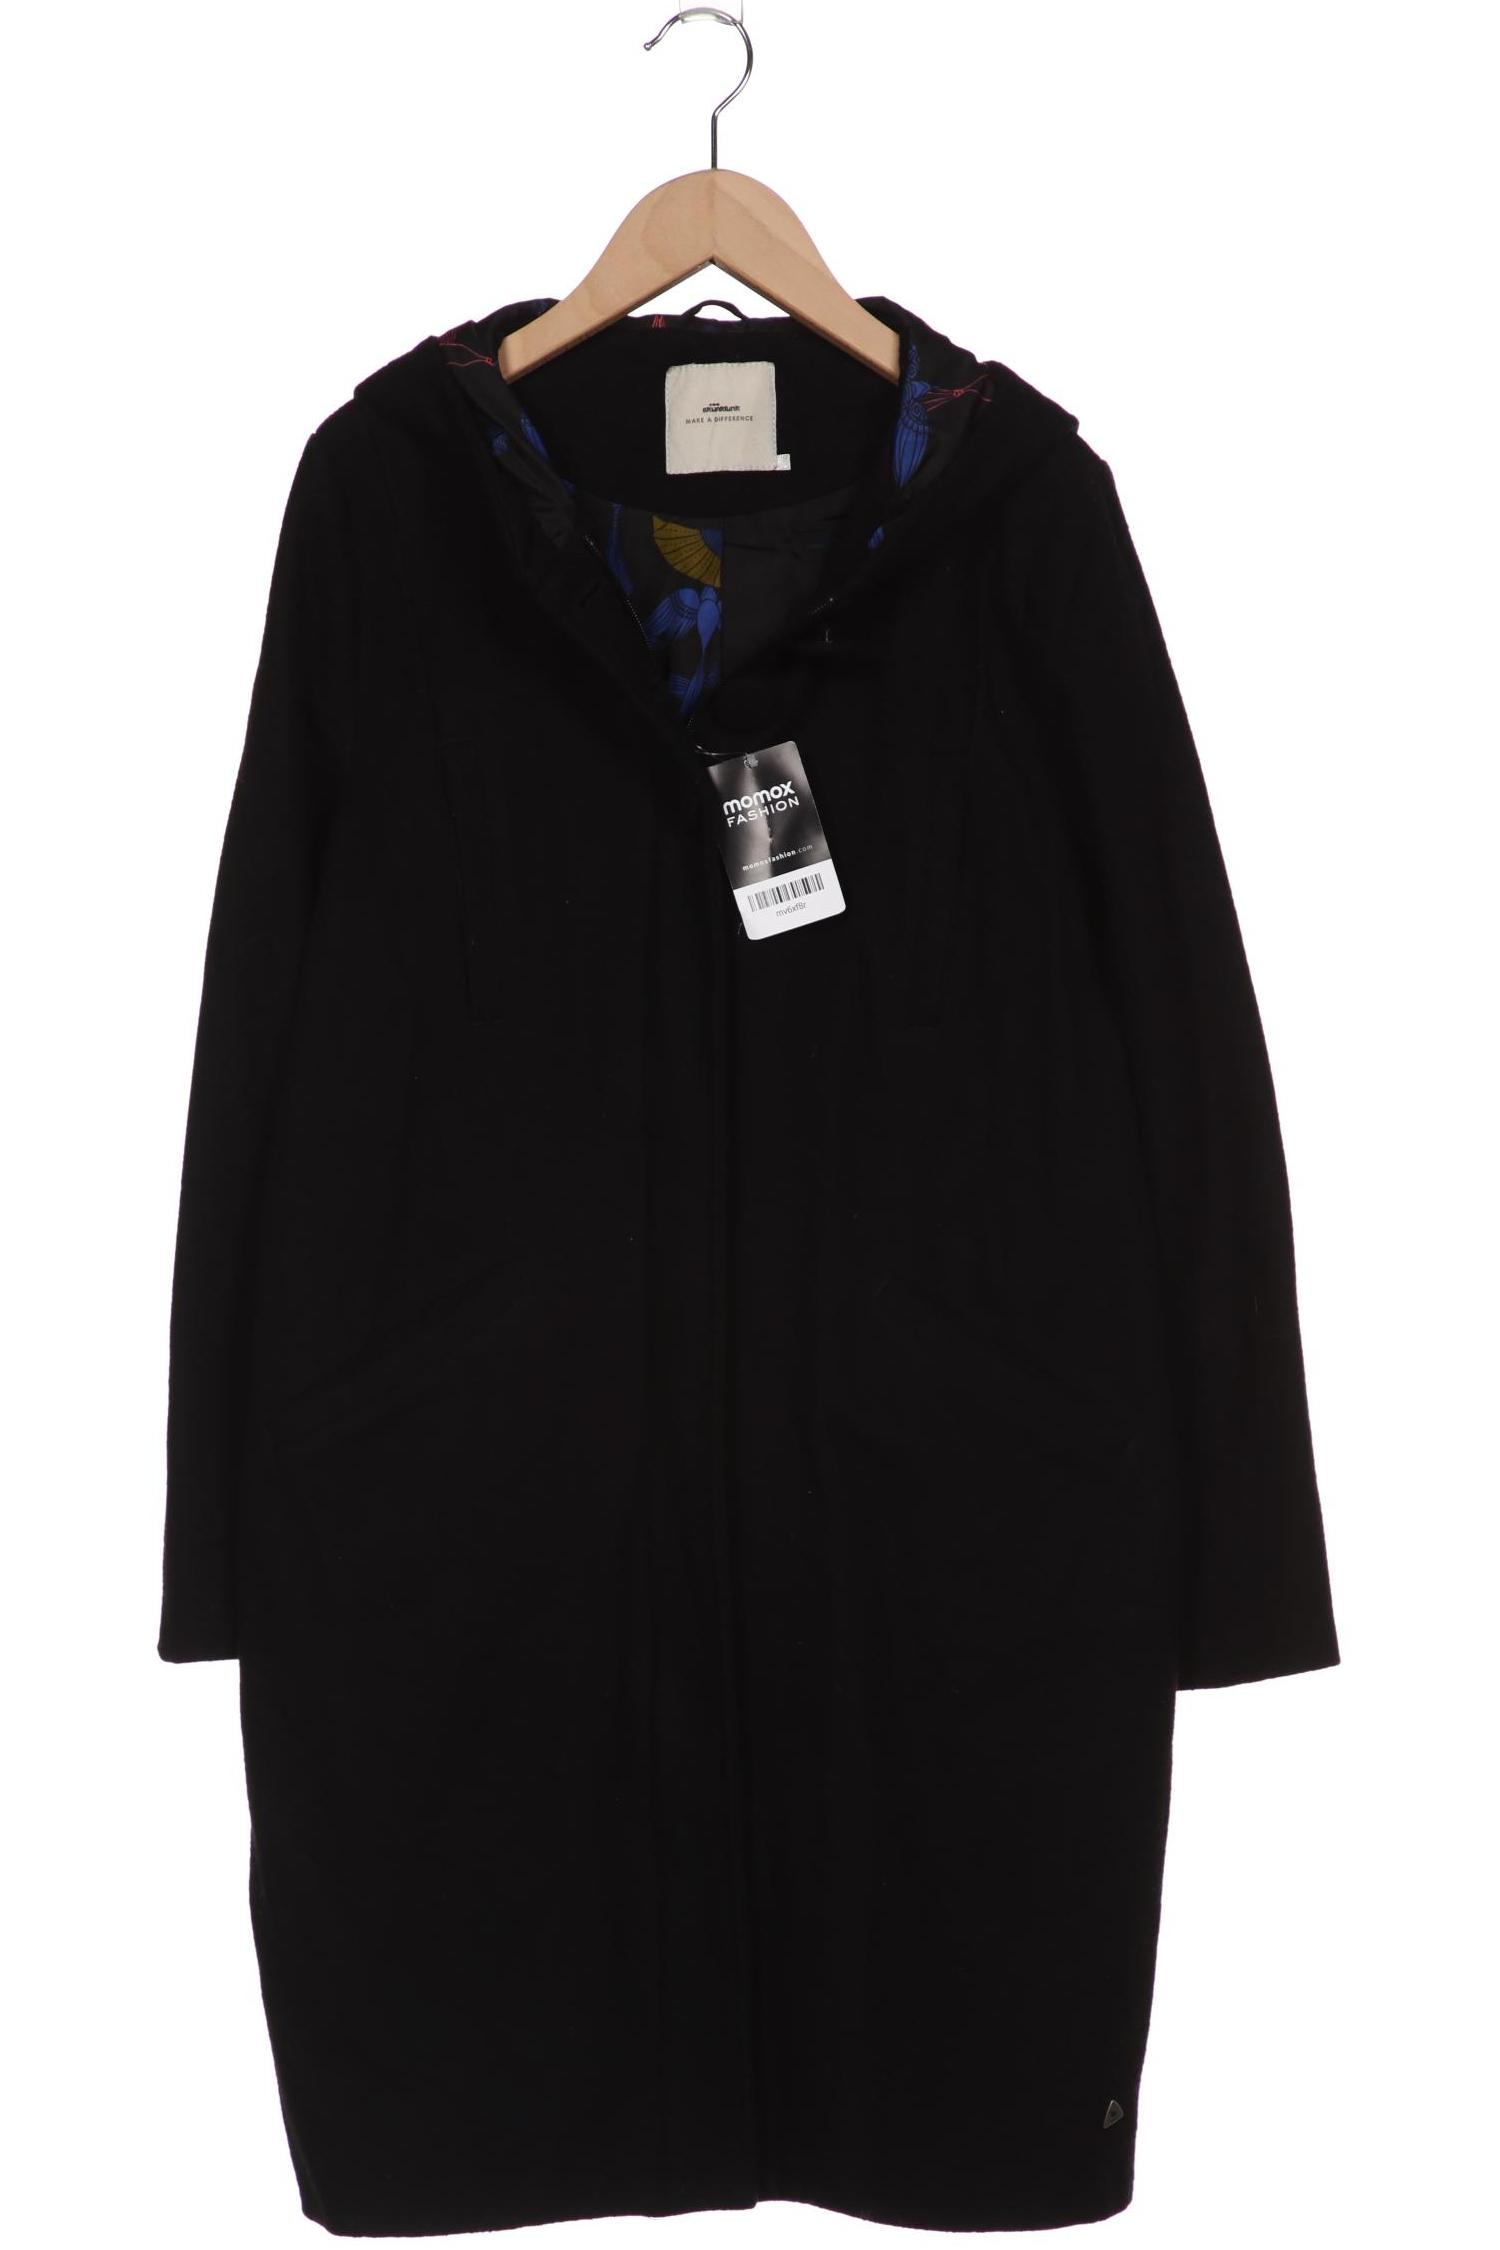 Skfk Damen Mantel, schwarz, Gr. 36 von SKFK